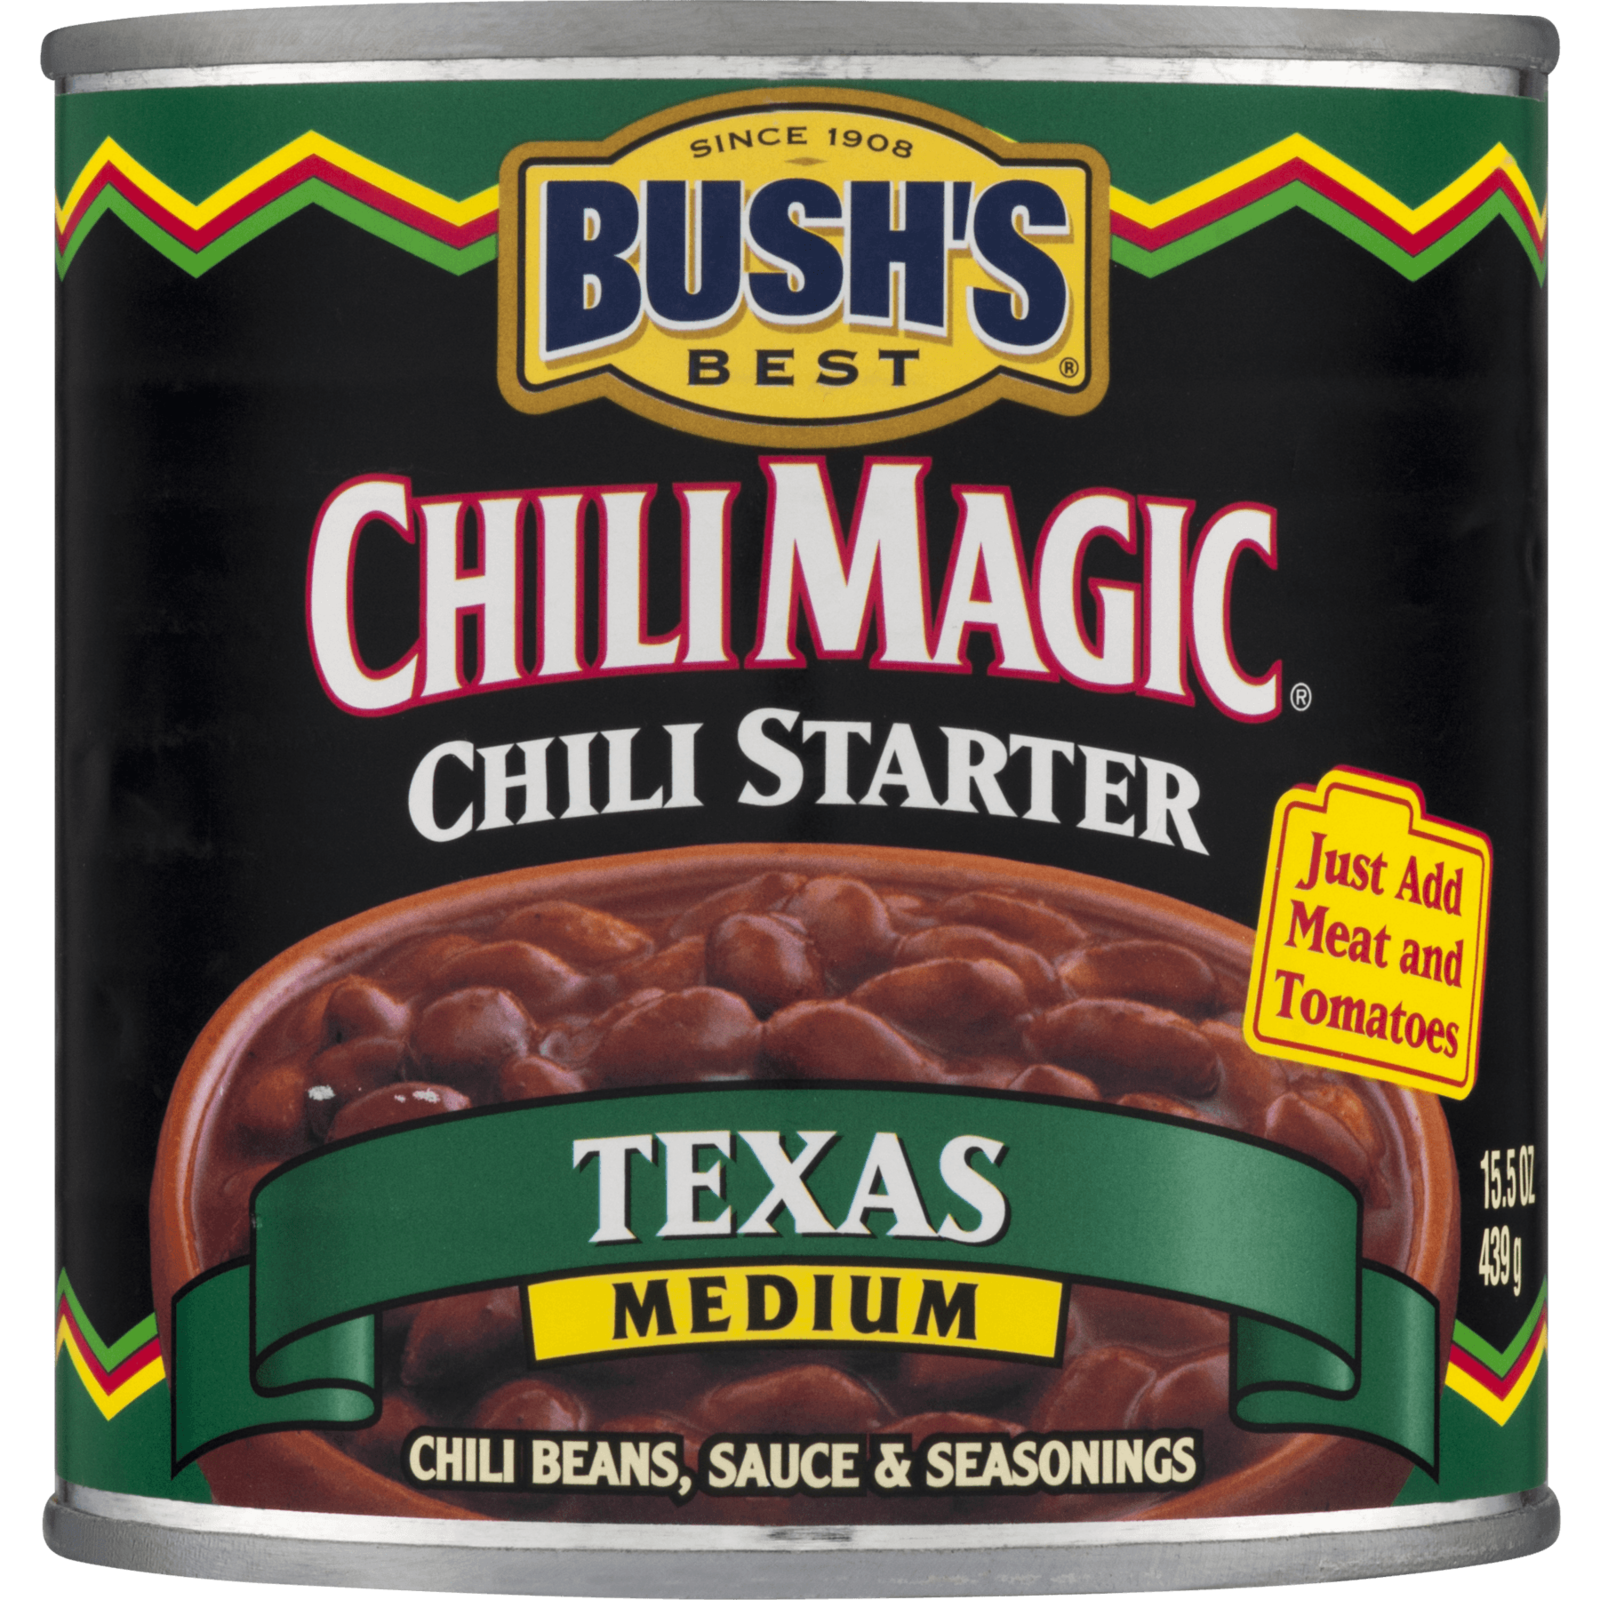 Bush's Best Chili Magic Texas Chili Starter, 15.5 oz